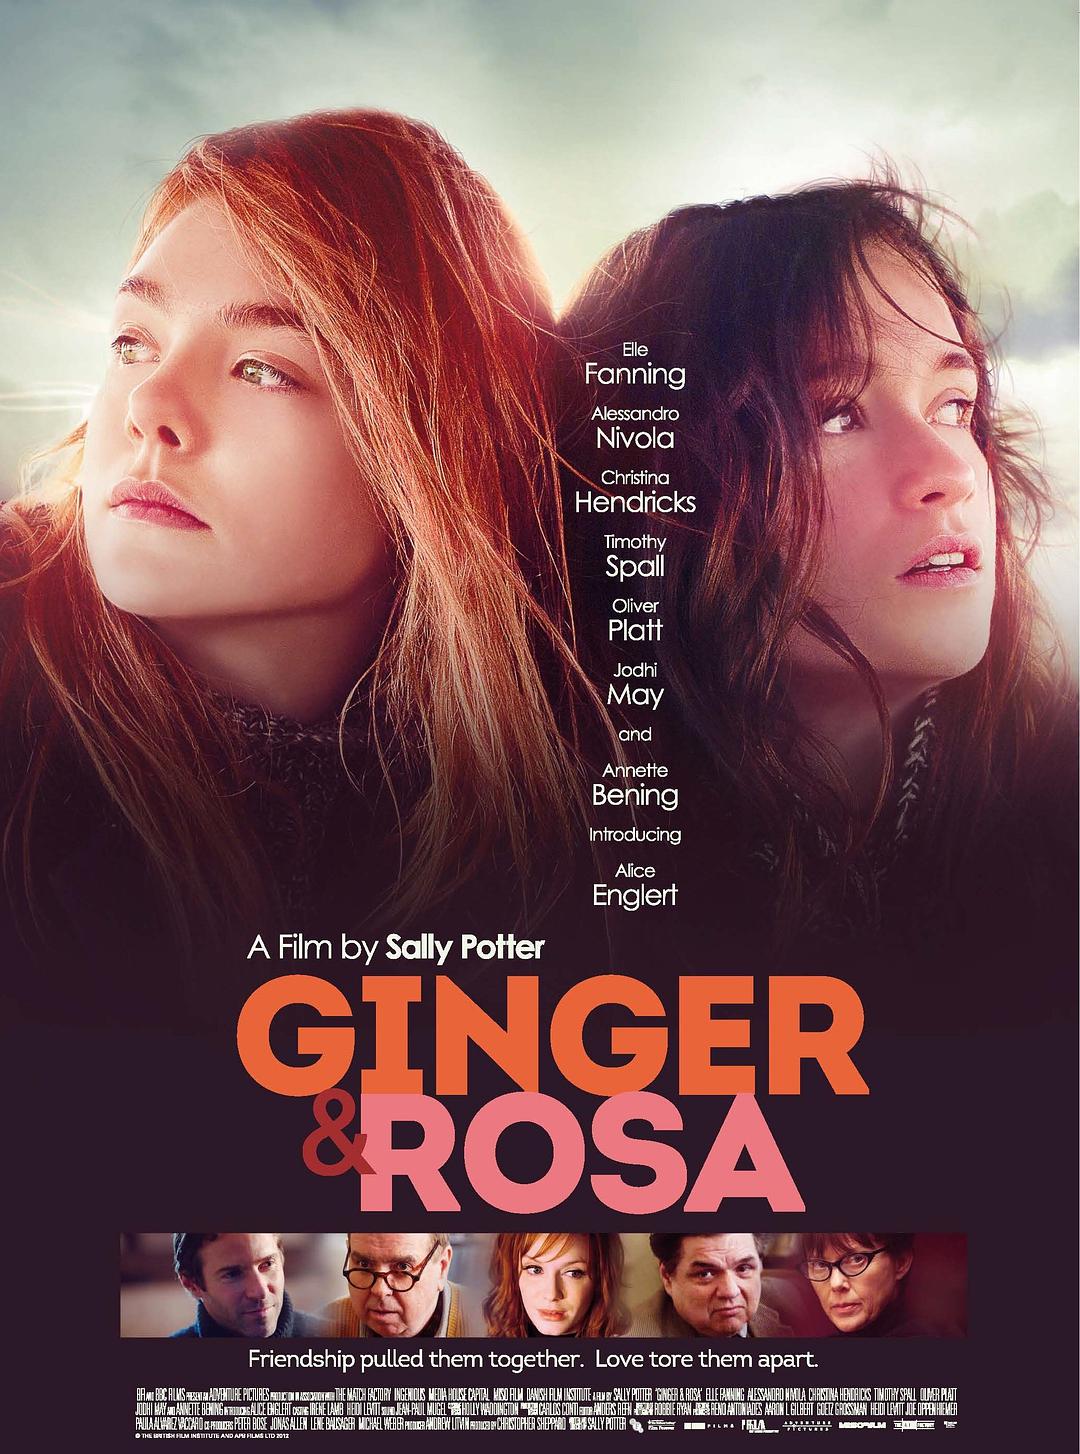 金吉尔和罗莎/珍姐与露莎(港)/青春你最姜(港) [DIY简繁字幕] Ginger and Rosa 2012 Blu-ray 1080p AVC DTS-HD MA 5.1-Pete@HDSky[42.30GB]-1.jpg